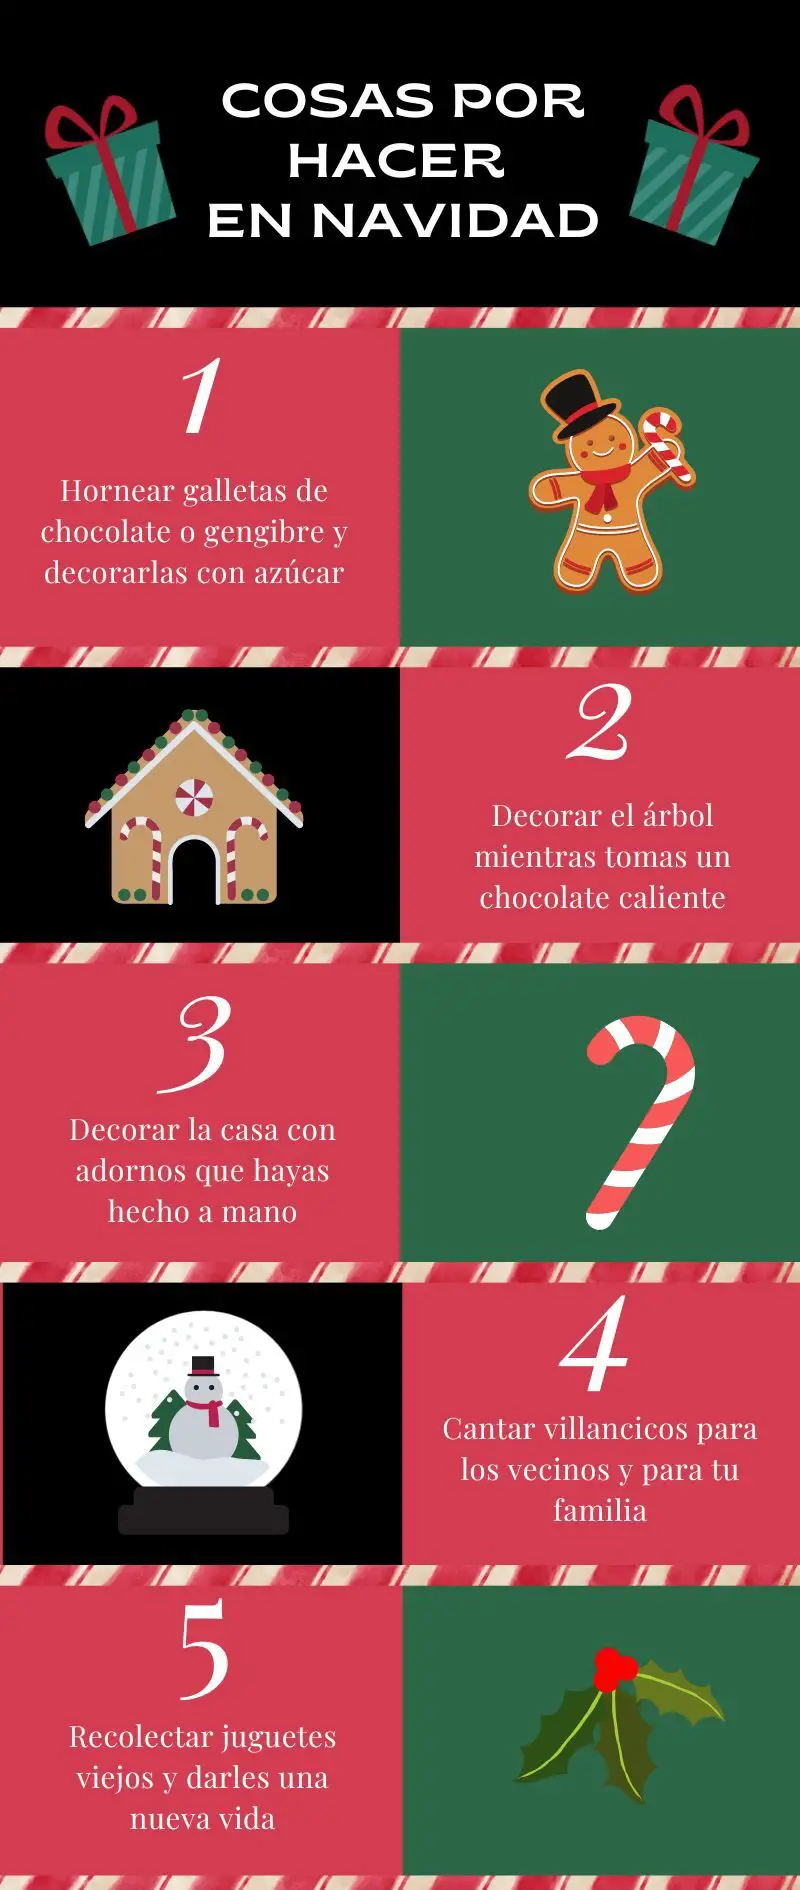 Infografía Sobre Cosas Por Hacer En Navidad